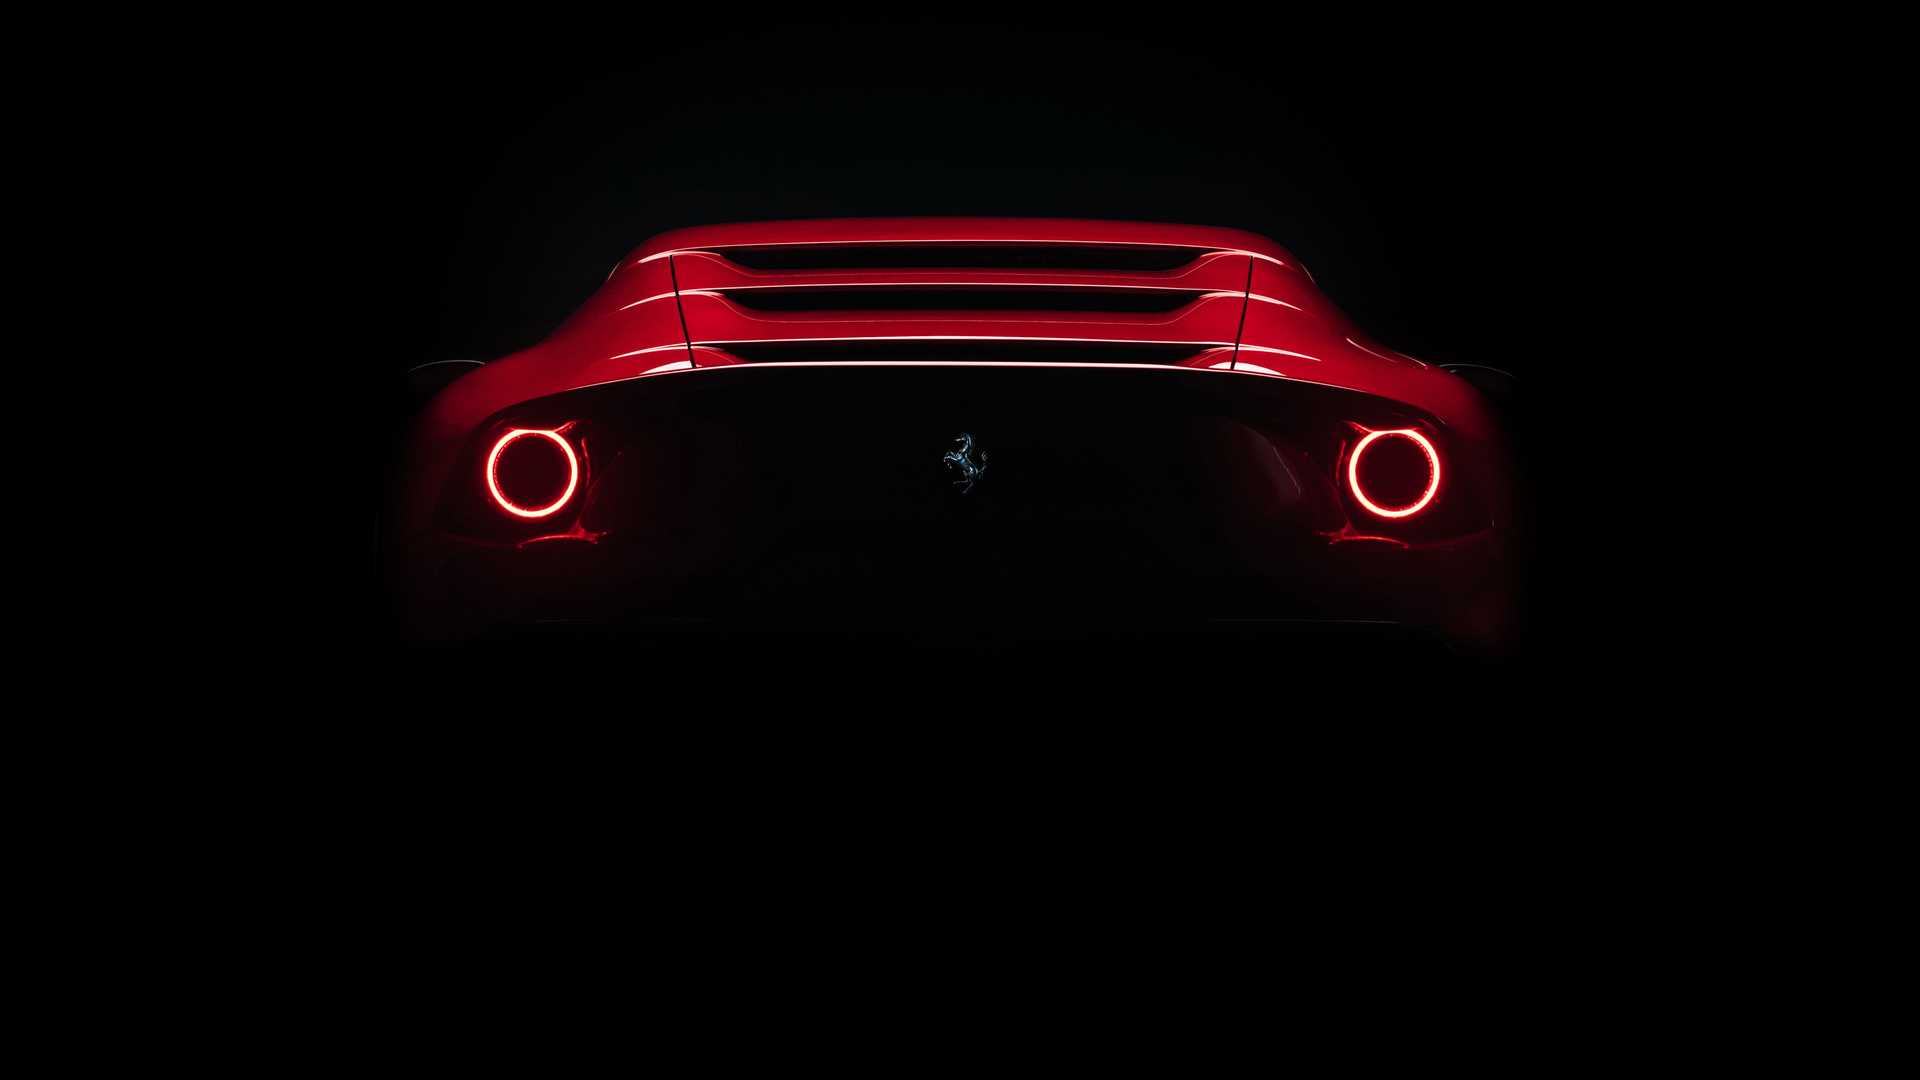 Ferrari tek bir müşteri için ürettiği aracı tanıttı